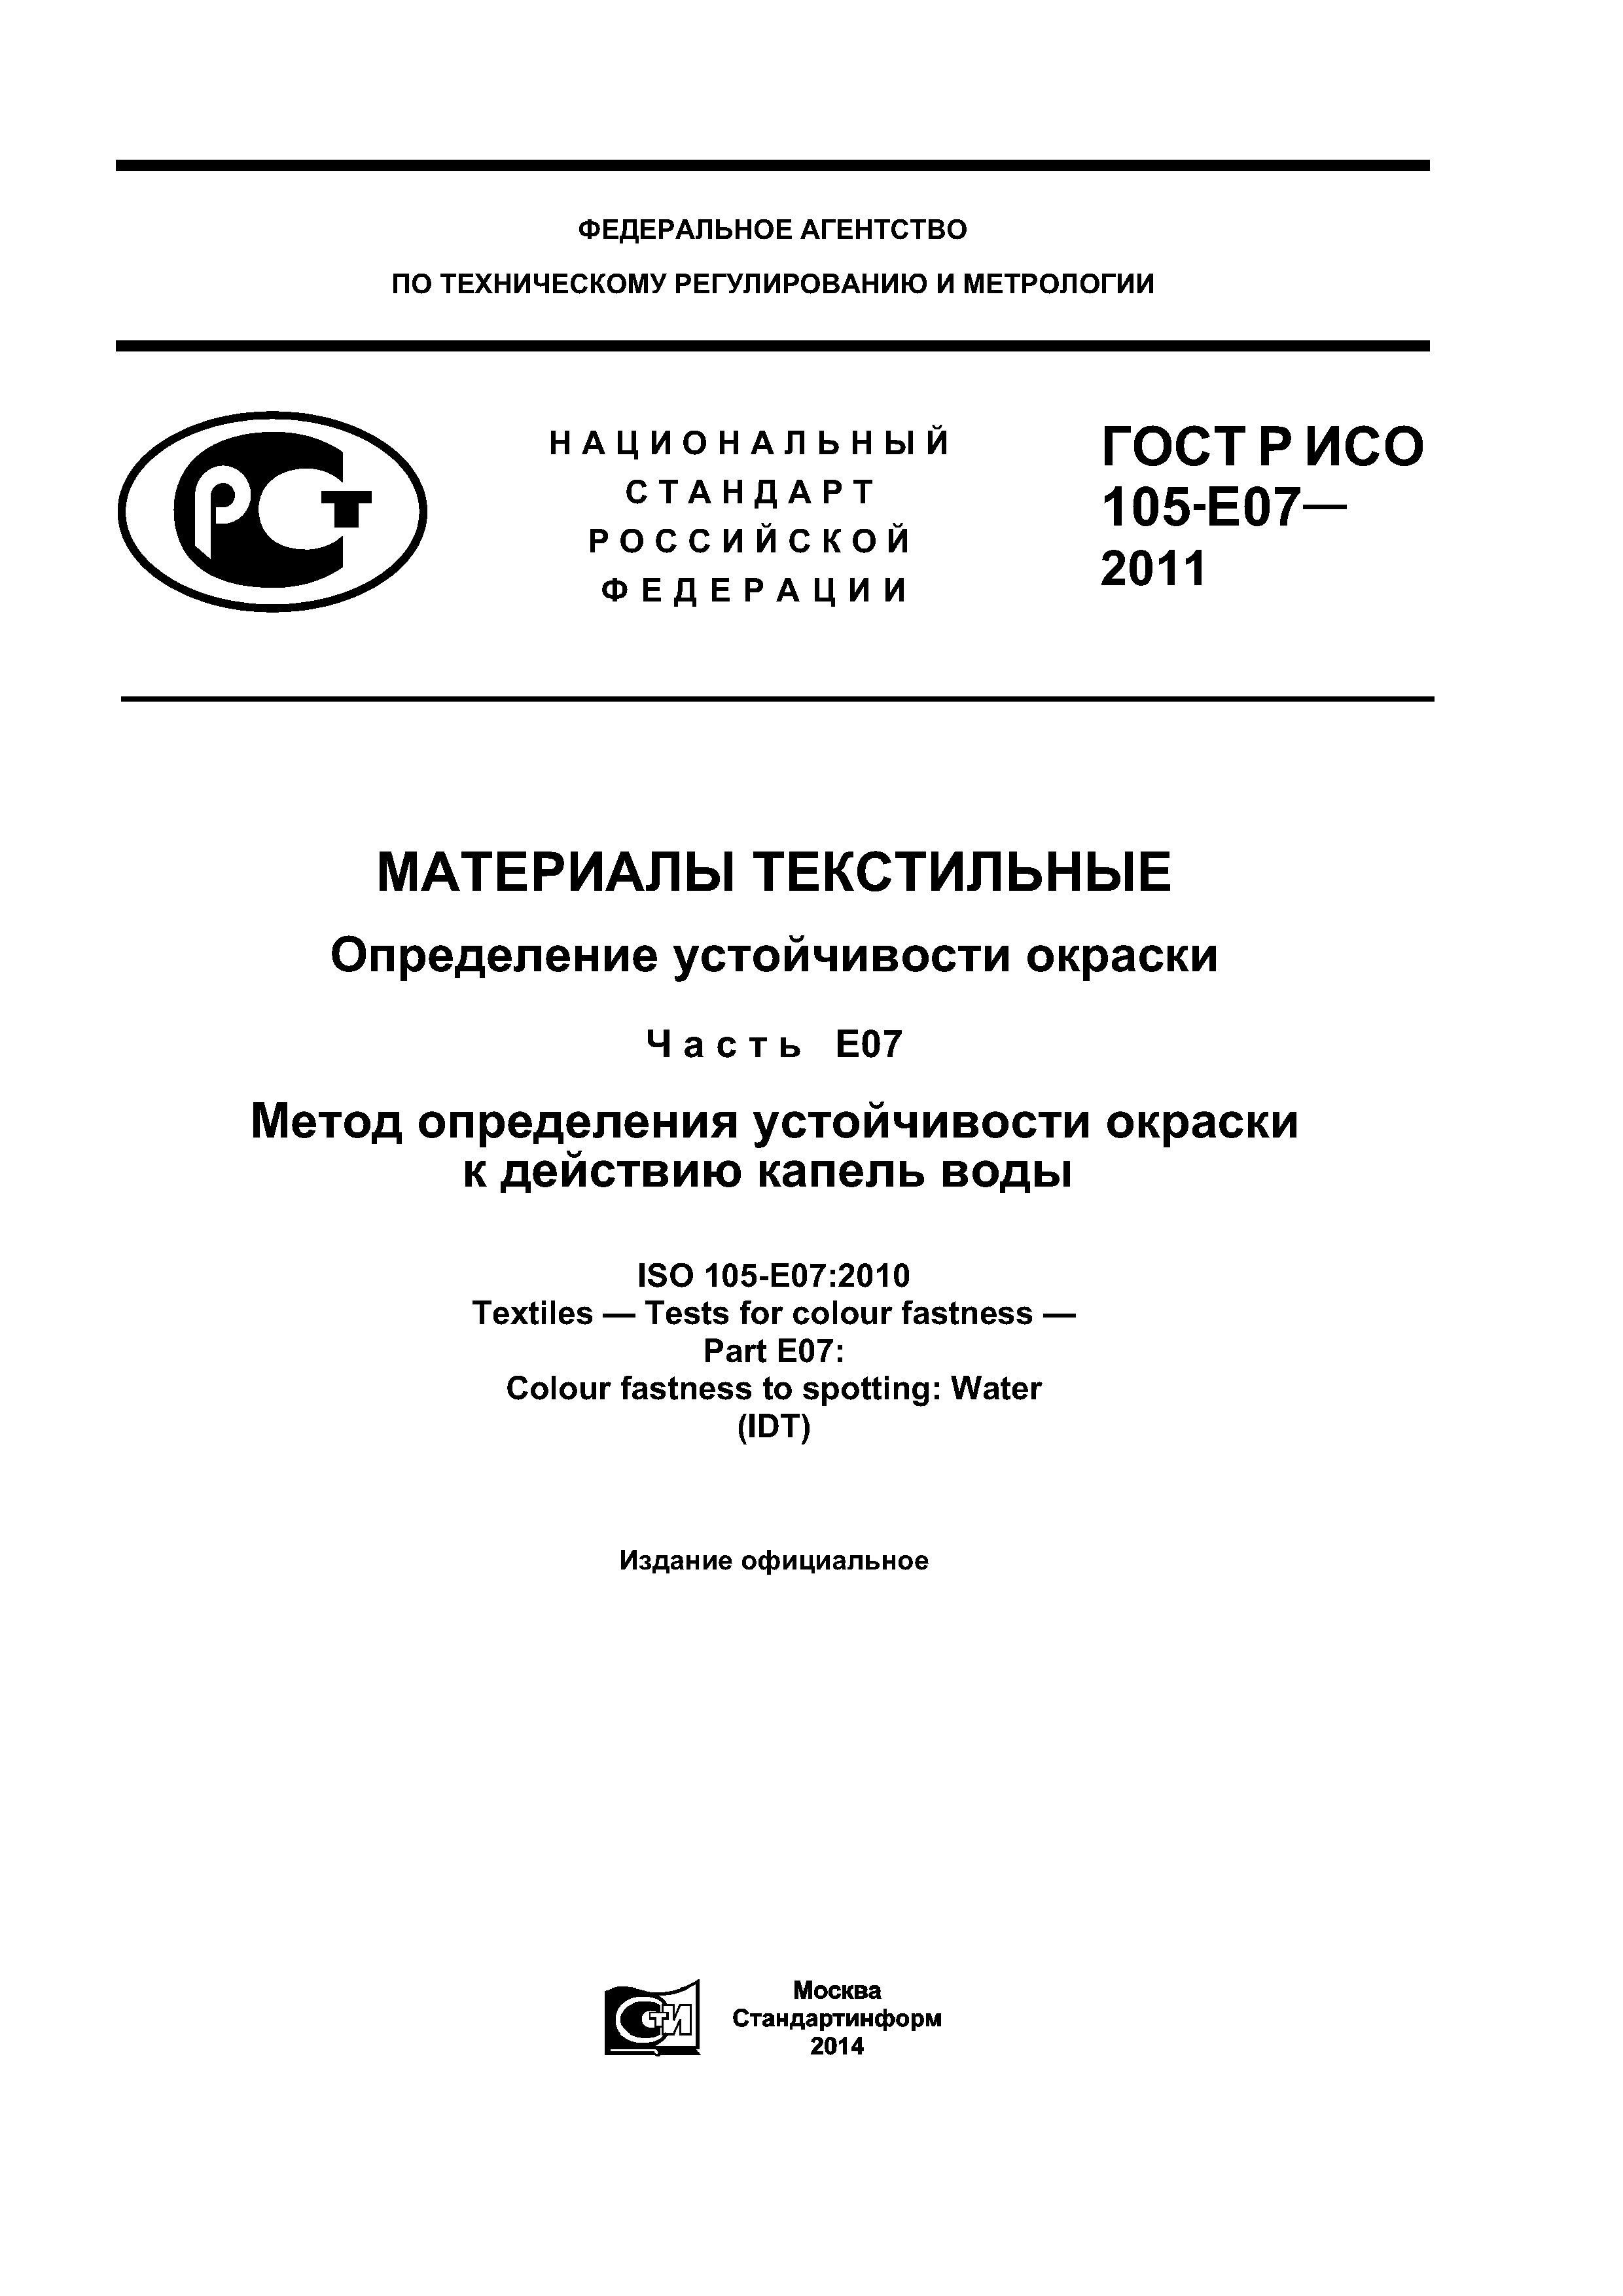 ГОСТ Р ИСО 105-E07-2011